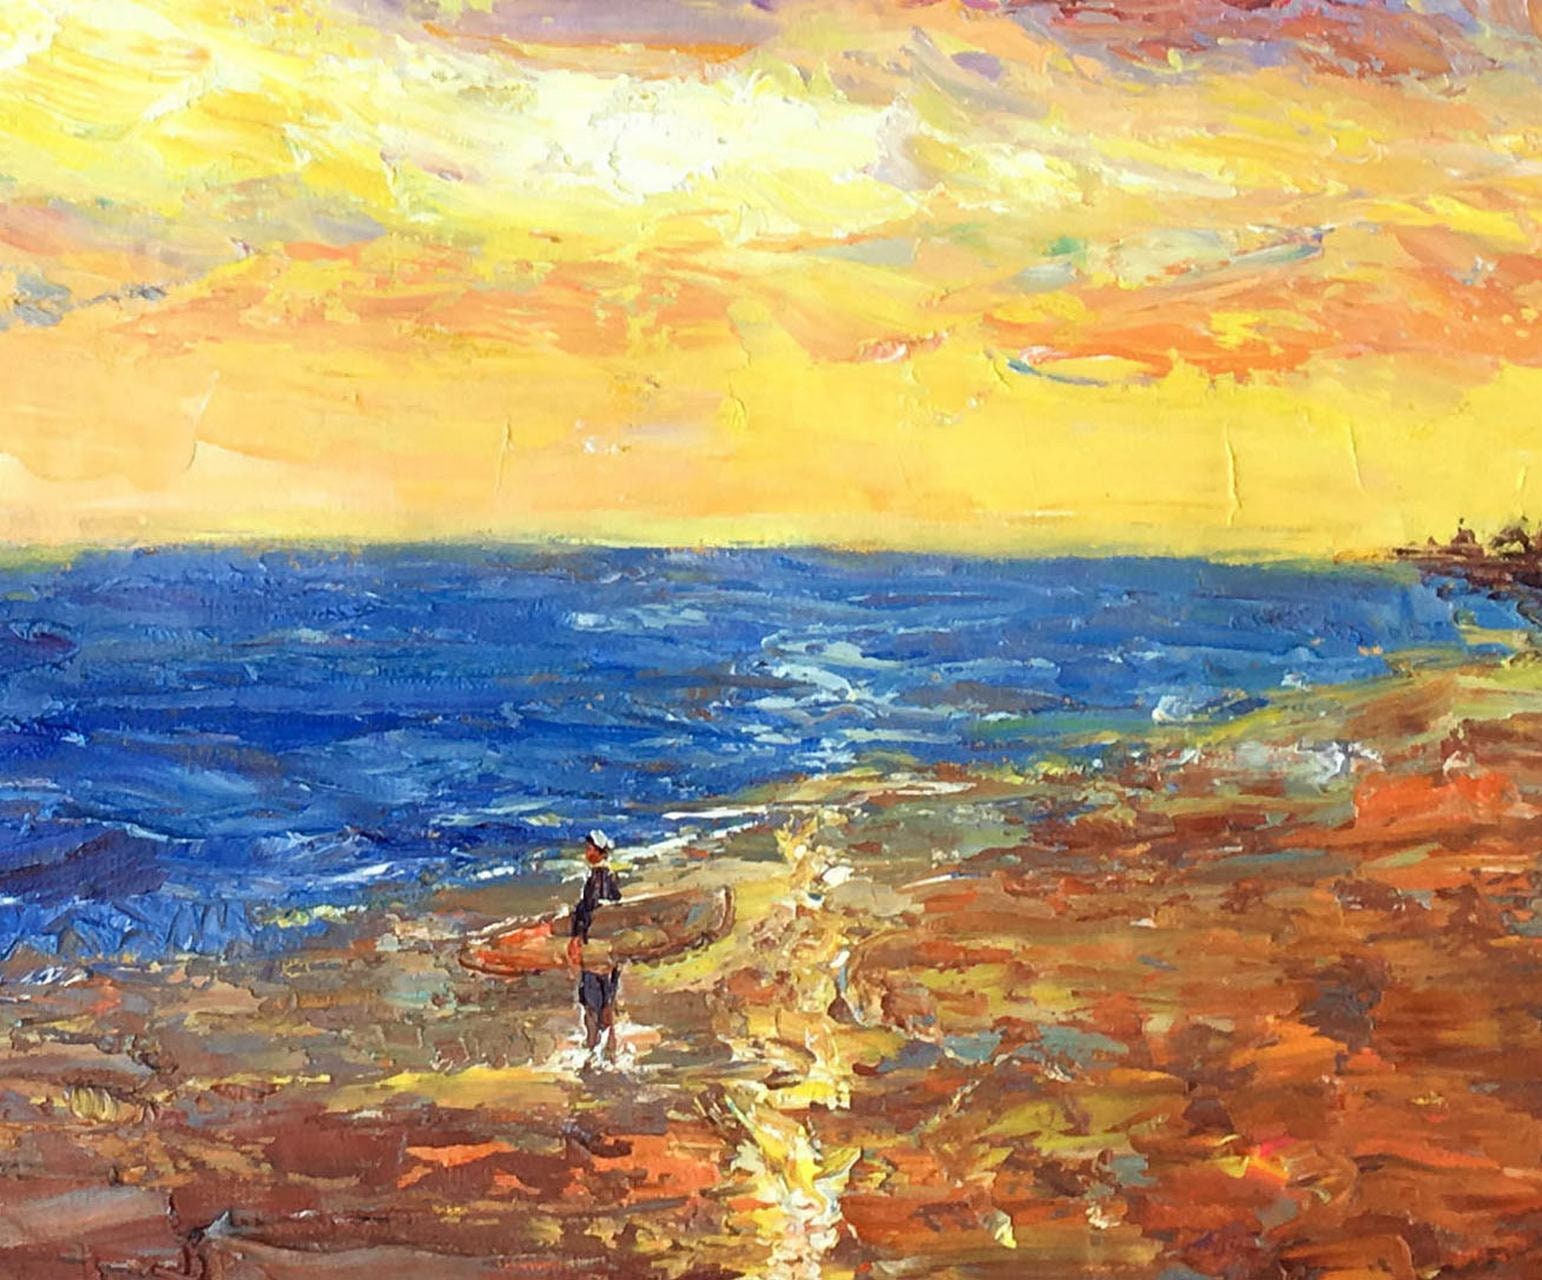 Oil Painting Beach Scene Seascape 8x10 Canvas Framed Size 13x15